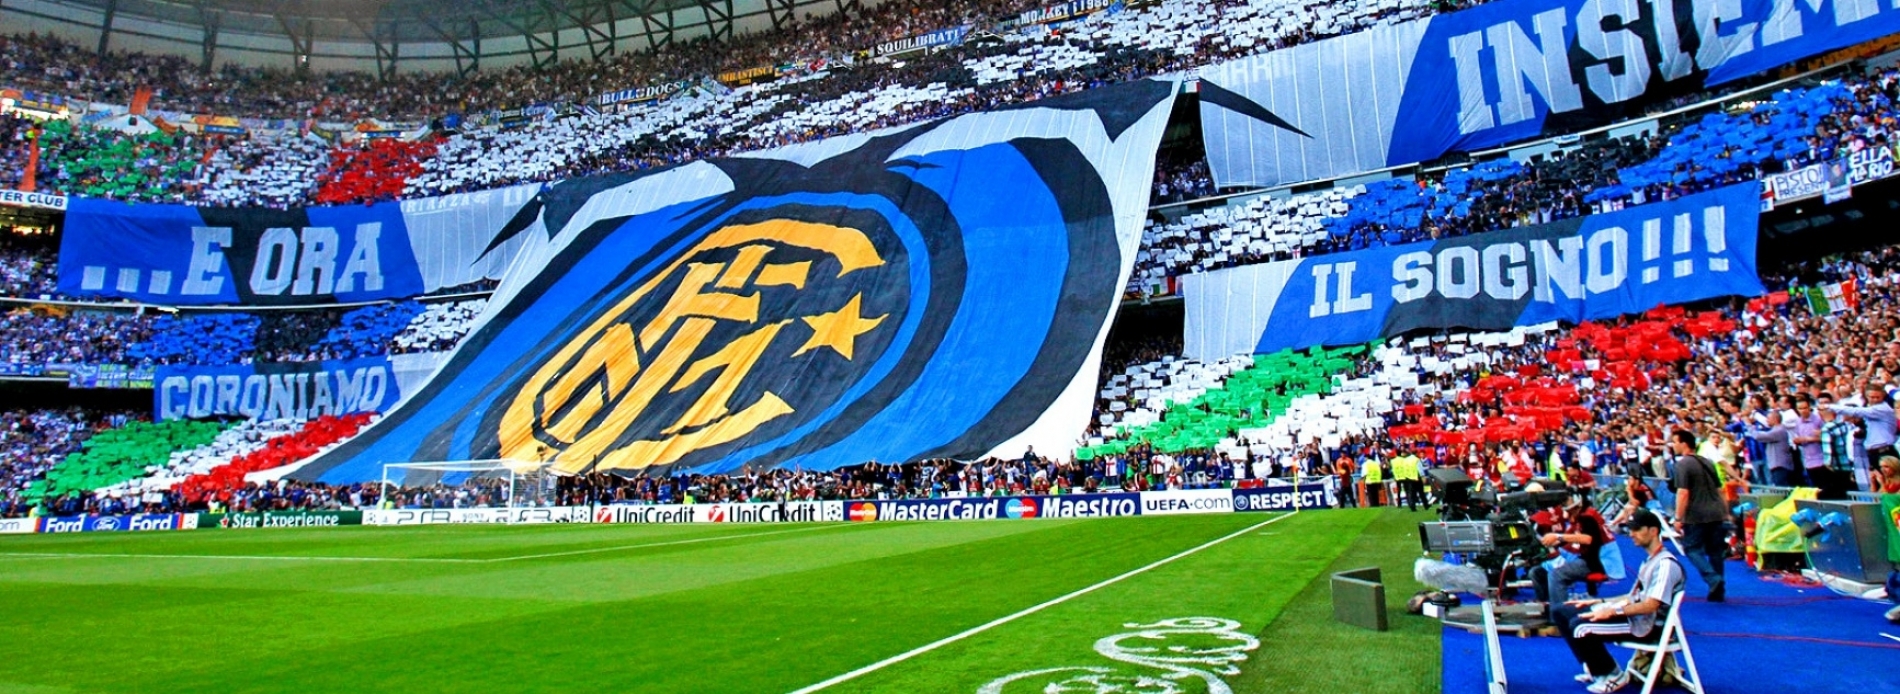 Napoli - AC Milan